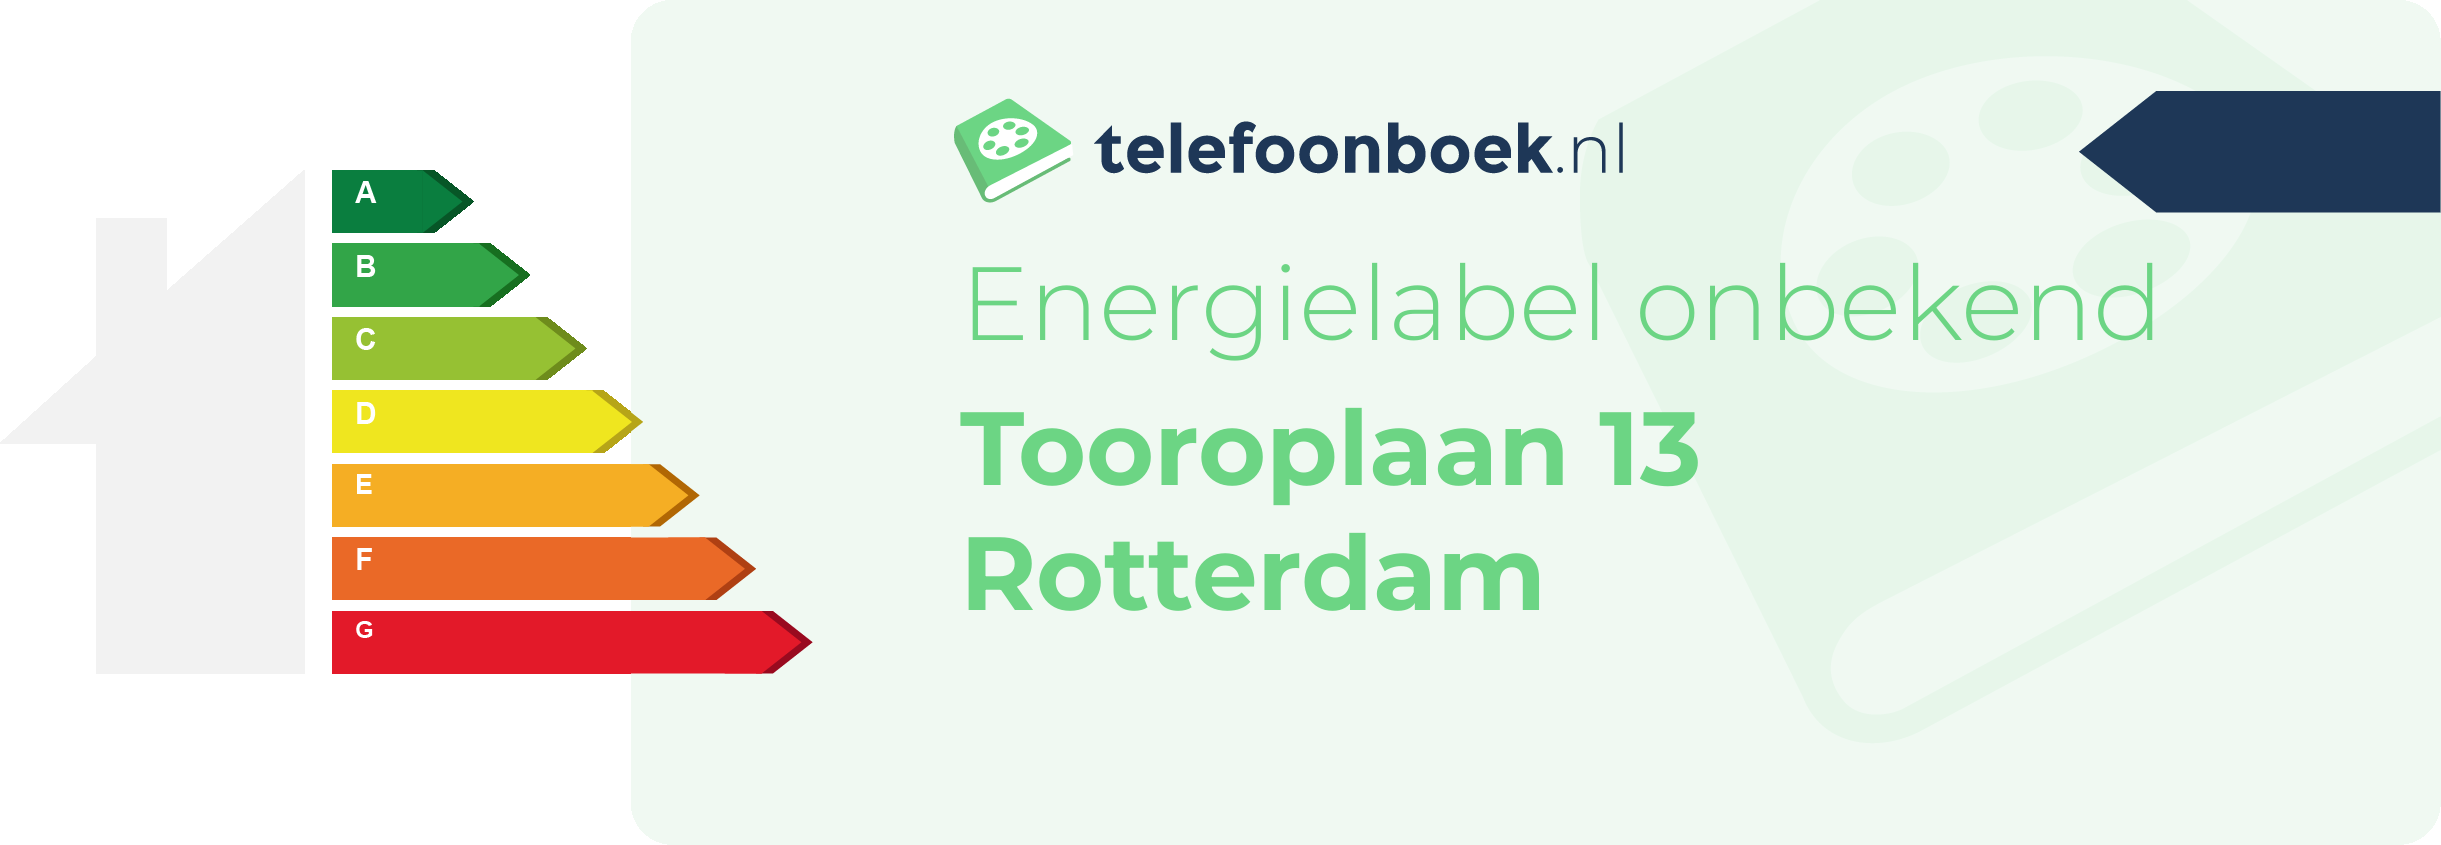 Energielabel Tooroplaan 13 Rotterdam